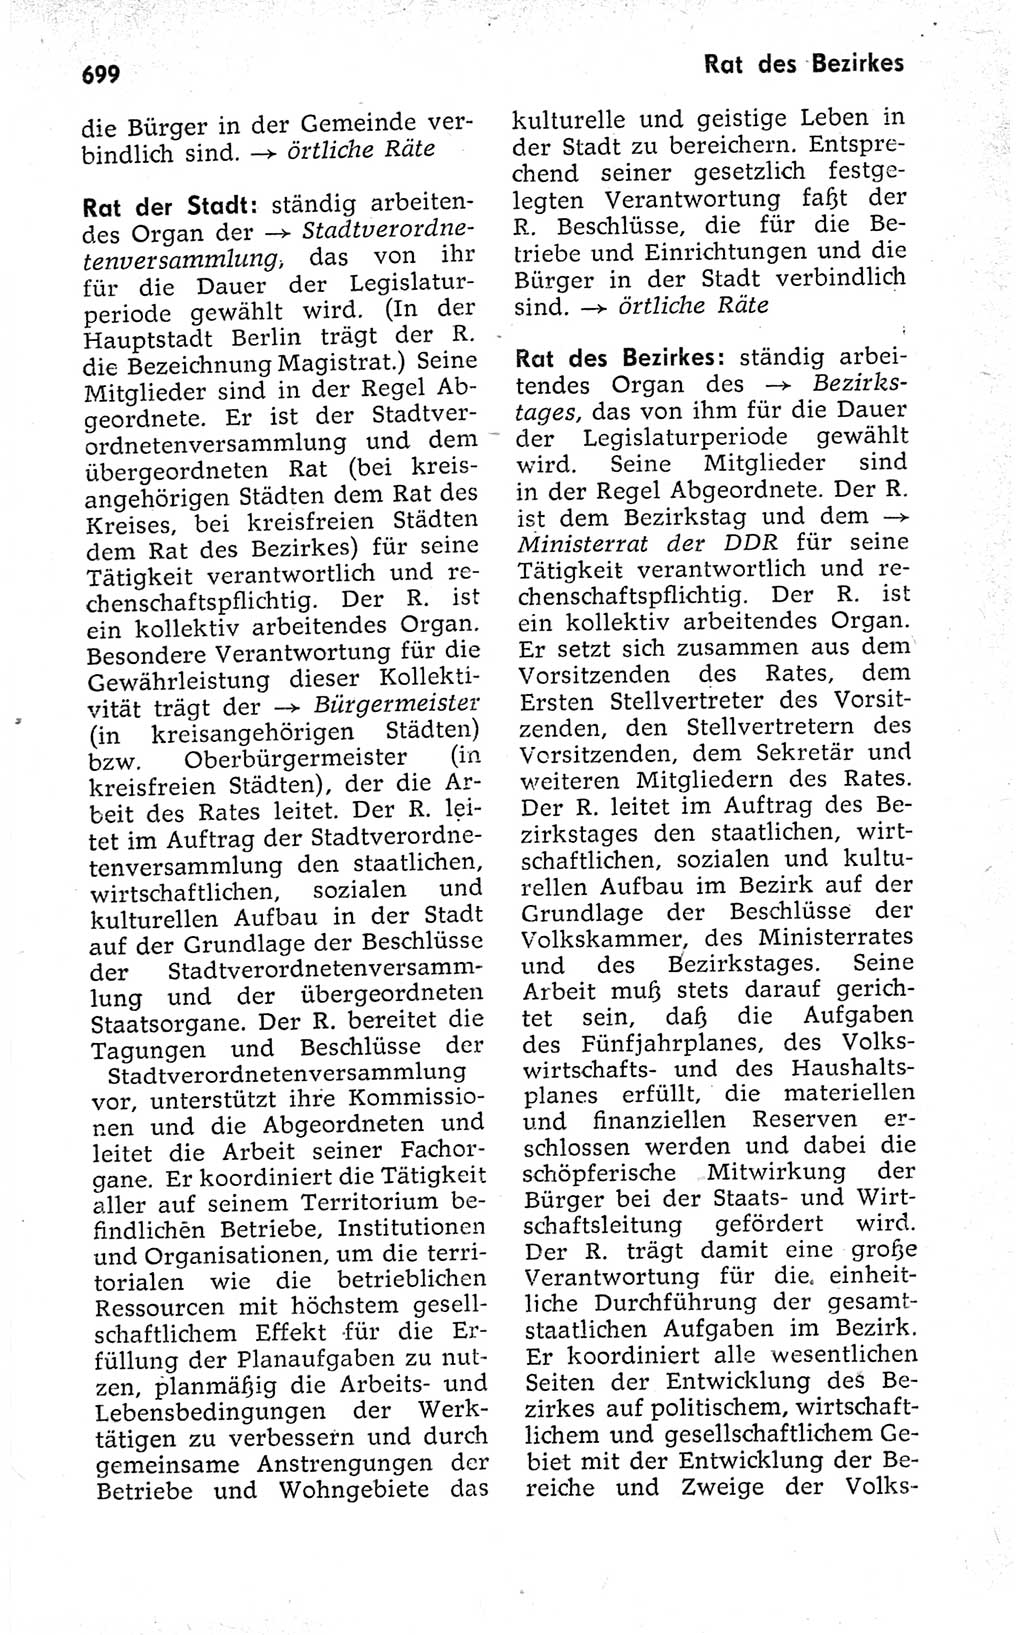 Kleines politisches Wörterbuch [Deutsche Demokratische Republik (DDR)] 1973, Seite 699 (Kl. pol. Wb. DDR 1973, S. 699)